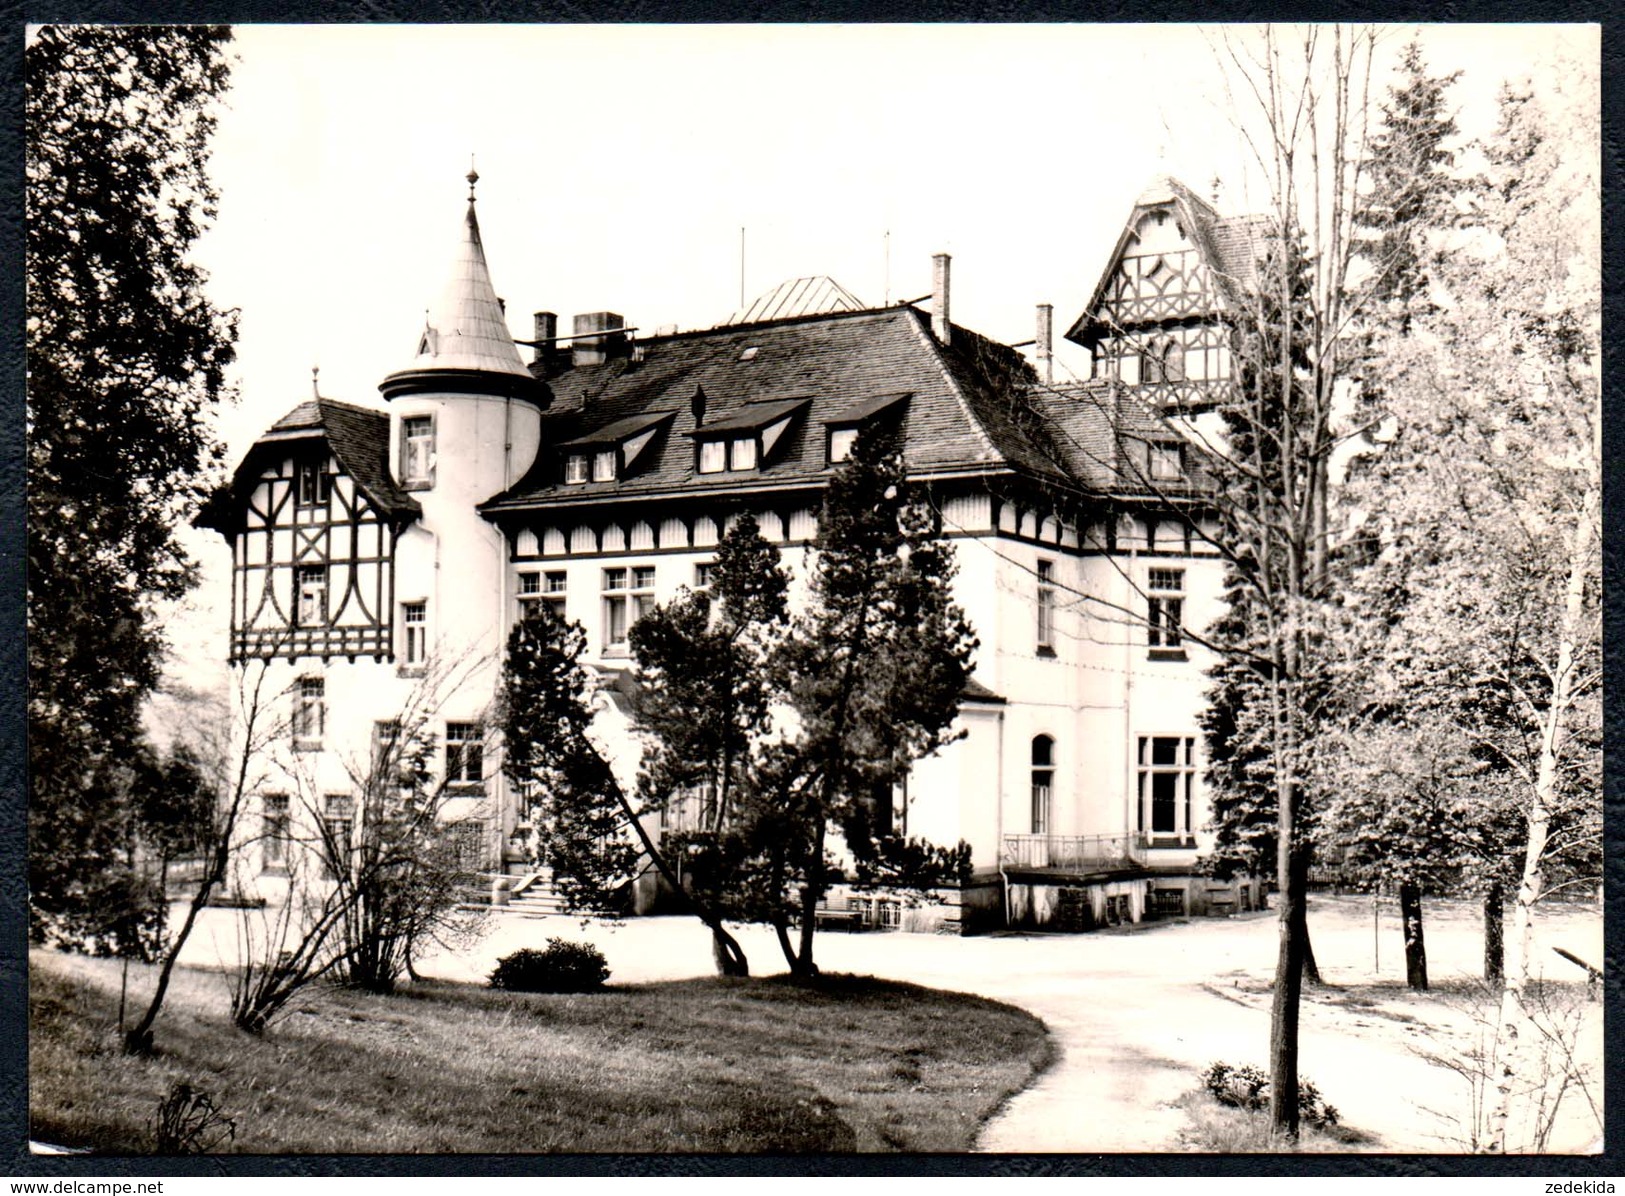 A9580 - Wolfsgrün Bei Eibenstock - Ferienheim - Gel 1981 - Lorenz - Eibenstock